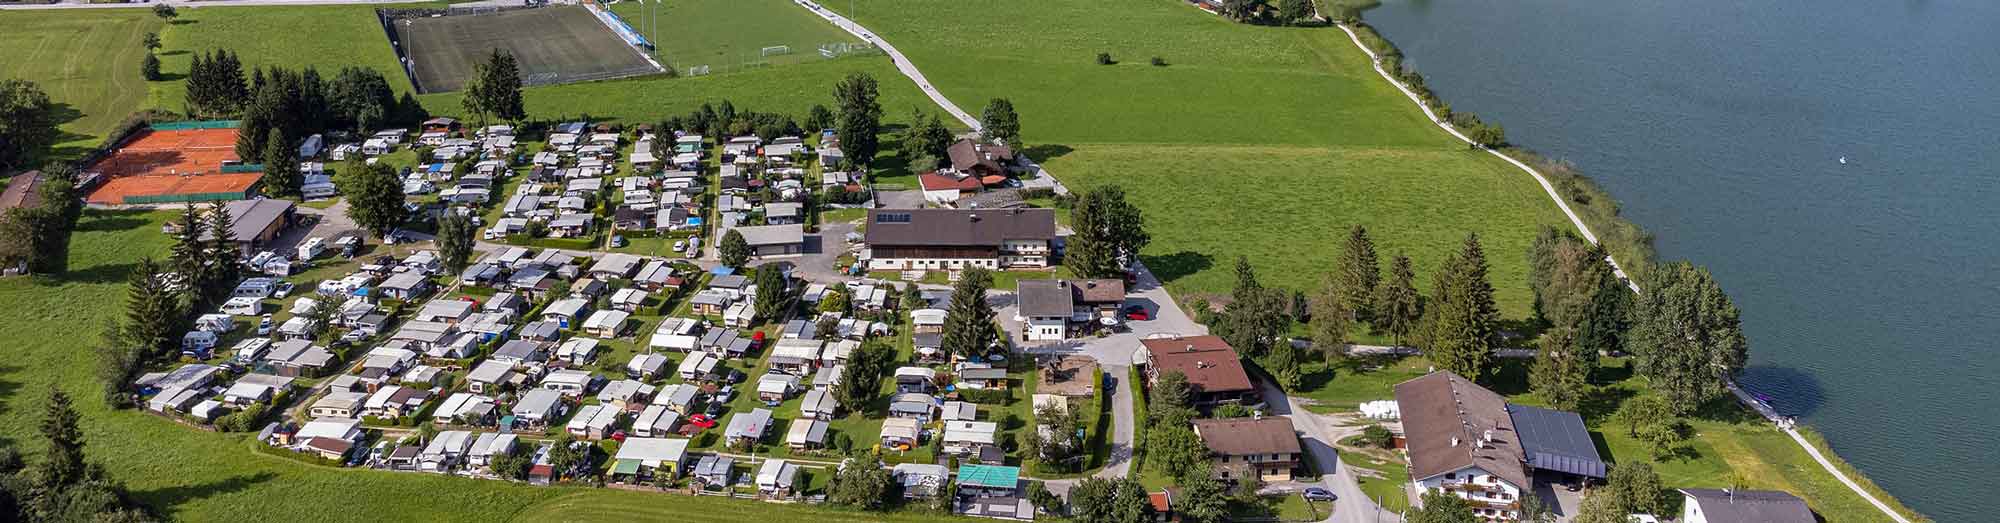 Hiasenhof Campingplatz